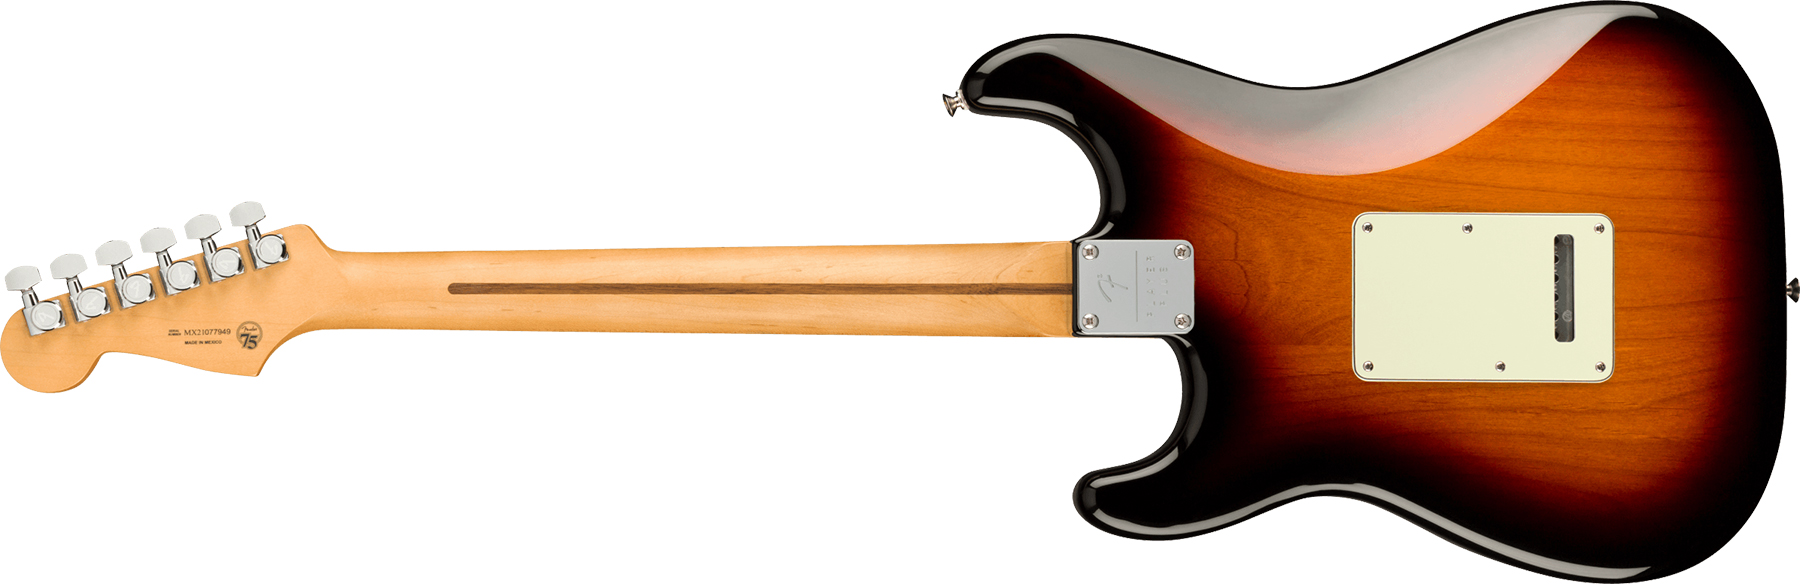 Fender Strat Player Plus Mex 3s Trem Mn - 3-color Sunburst - E-Gitarre in Str-Form - Variation 1